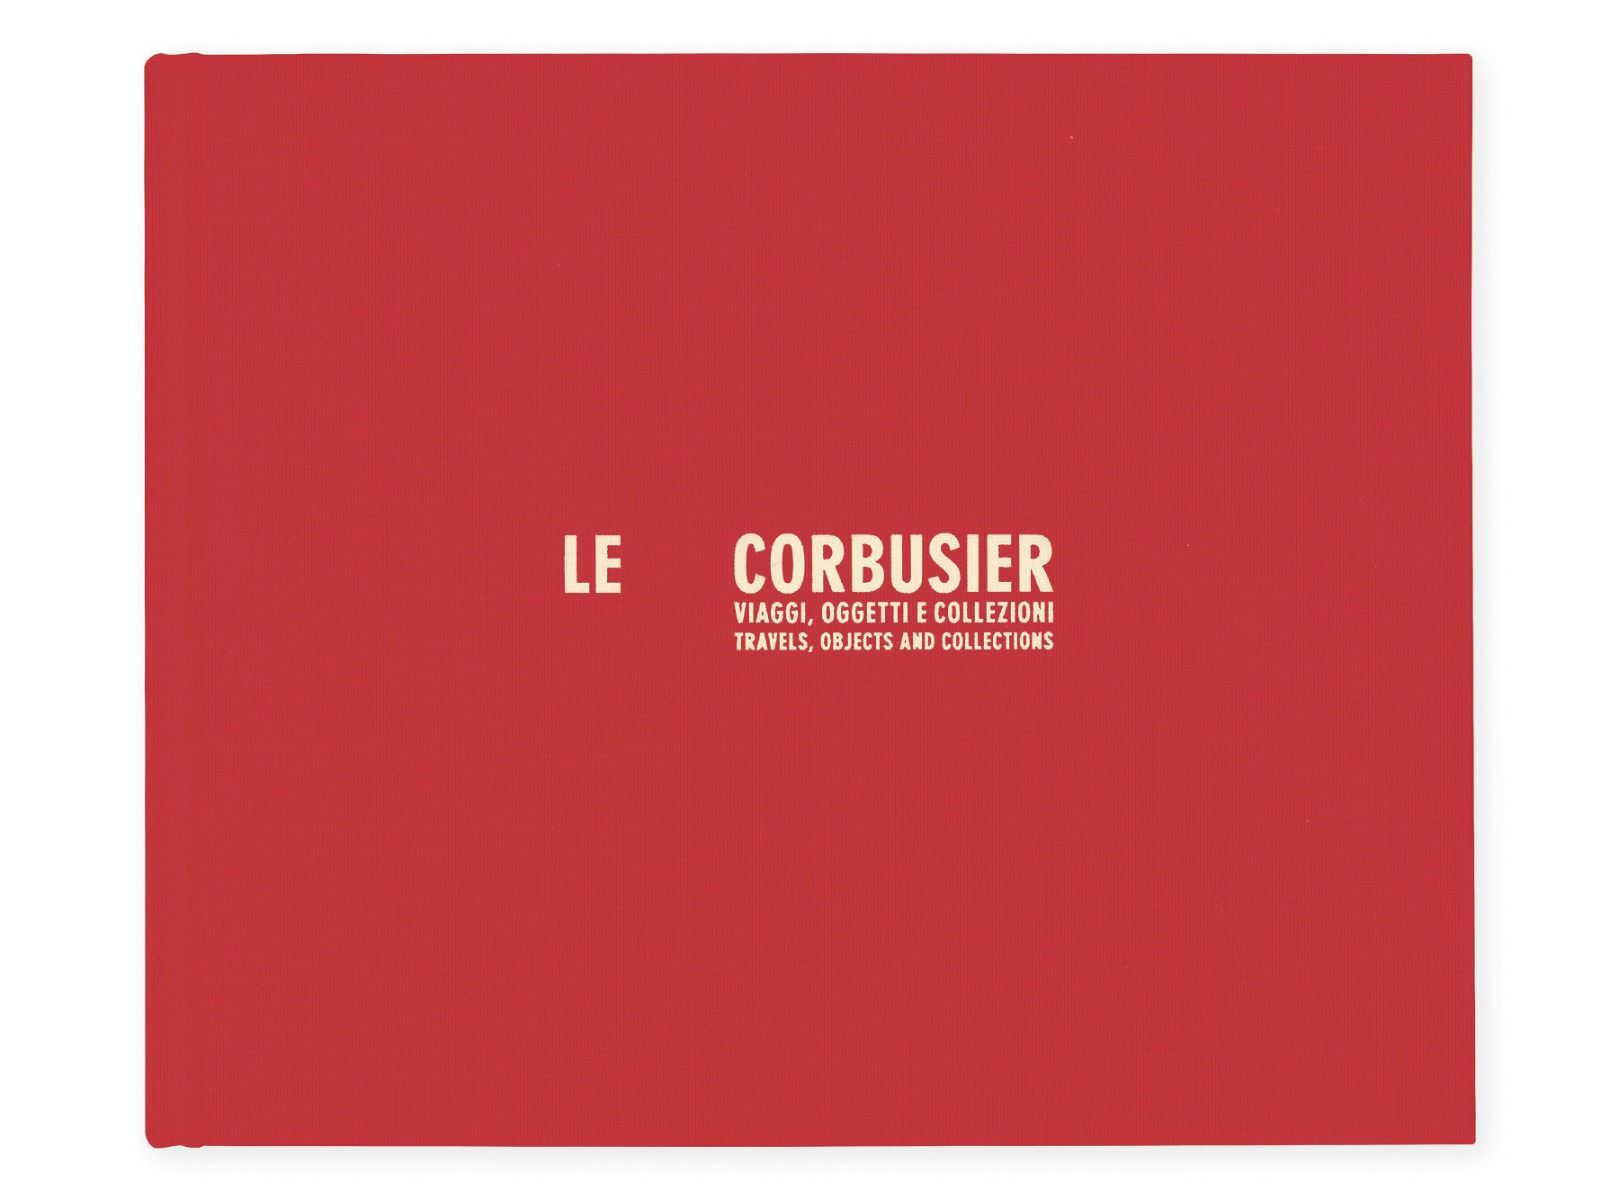 Le Corbusier - Viaggi, oggetti e collezioni